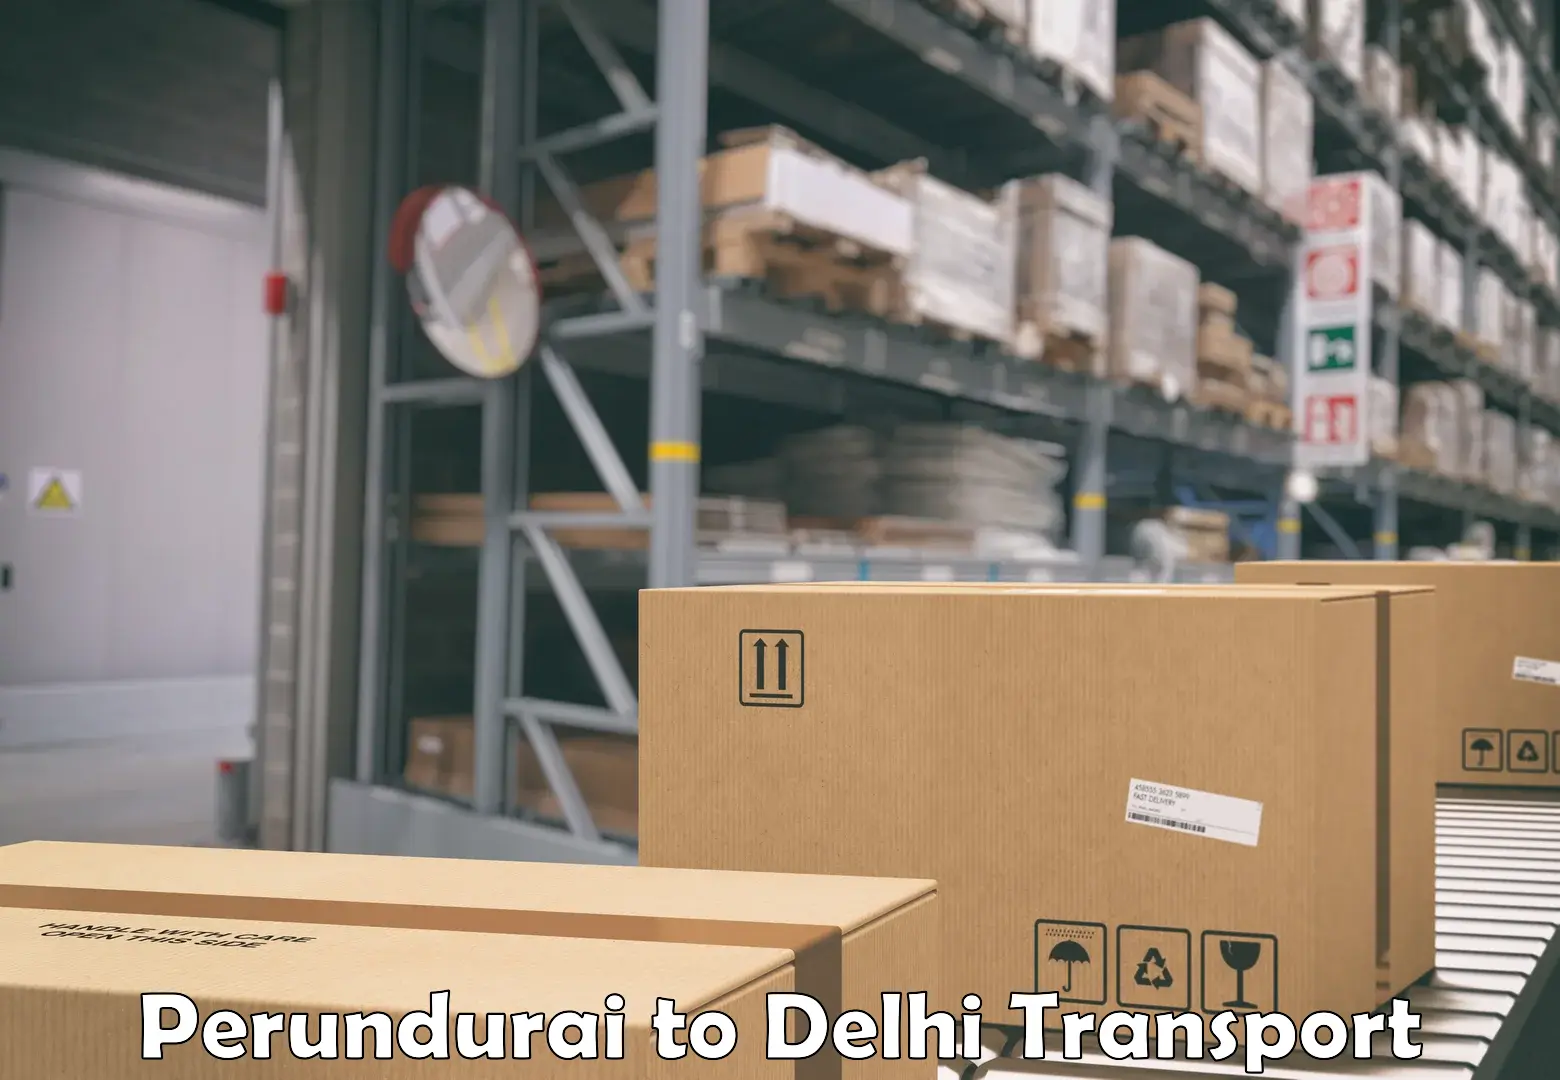 Container transport service Perundurai to Delhi